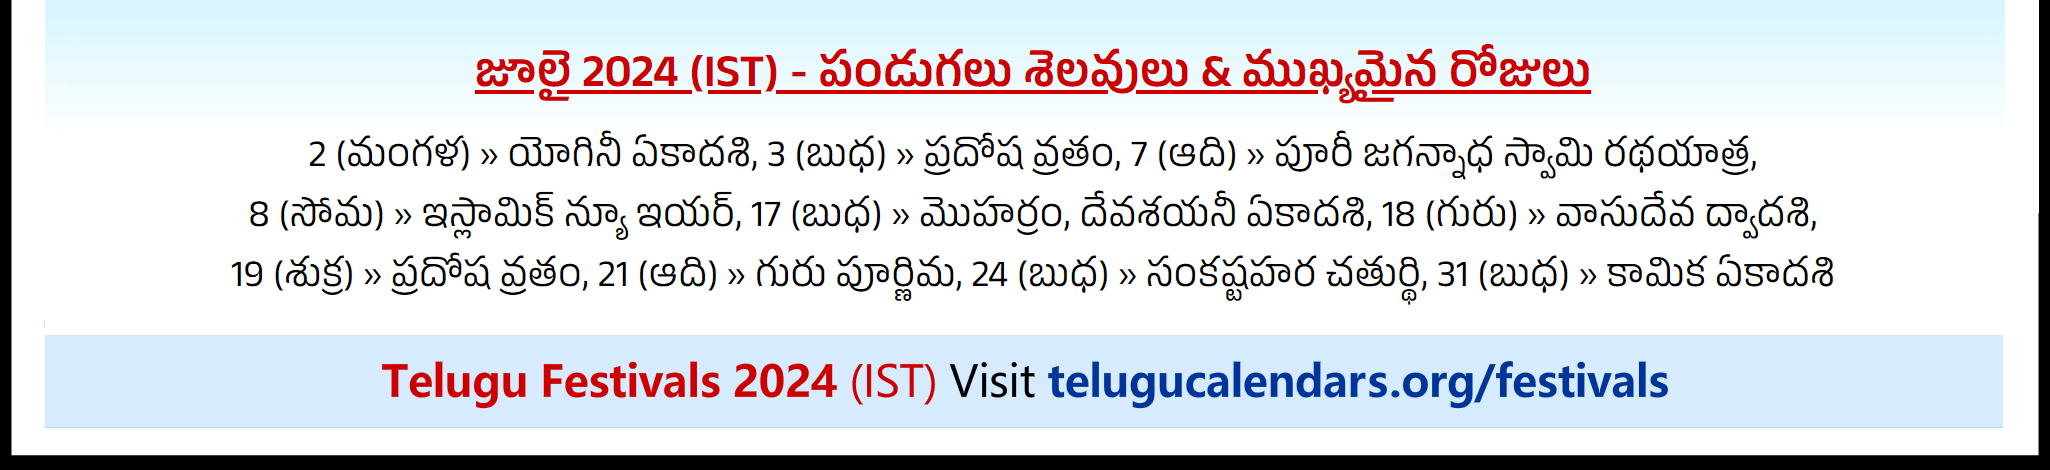 Telugu Festivals 2024 July Sydney